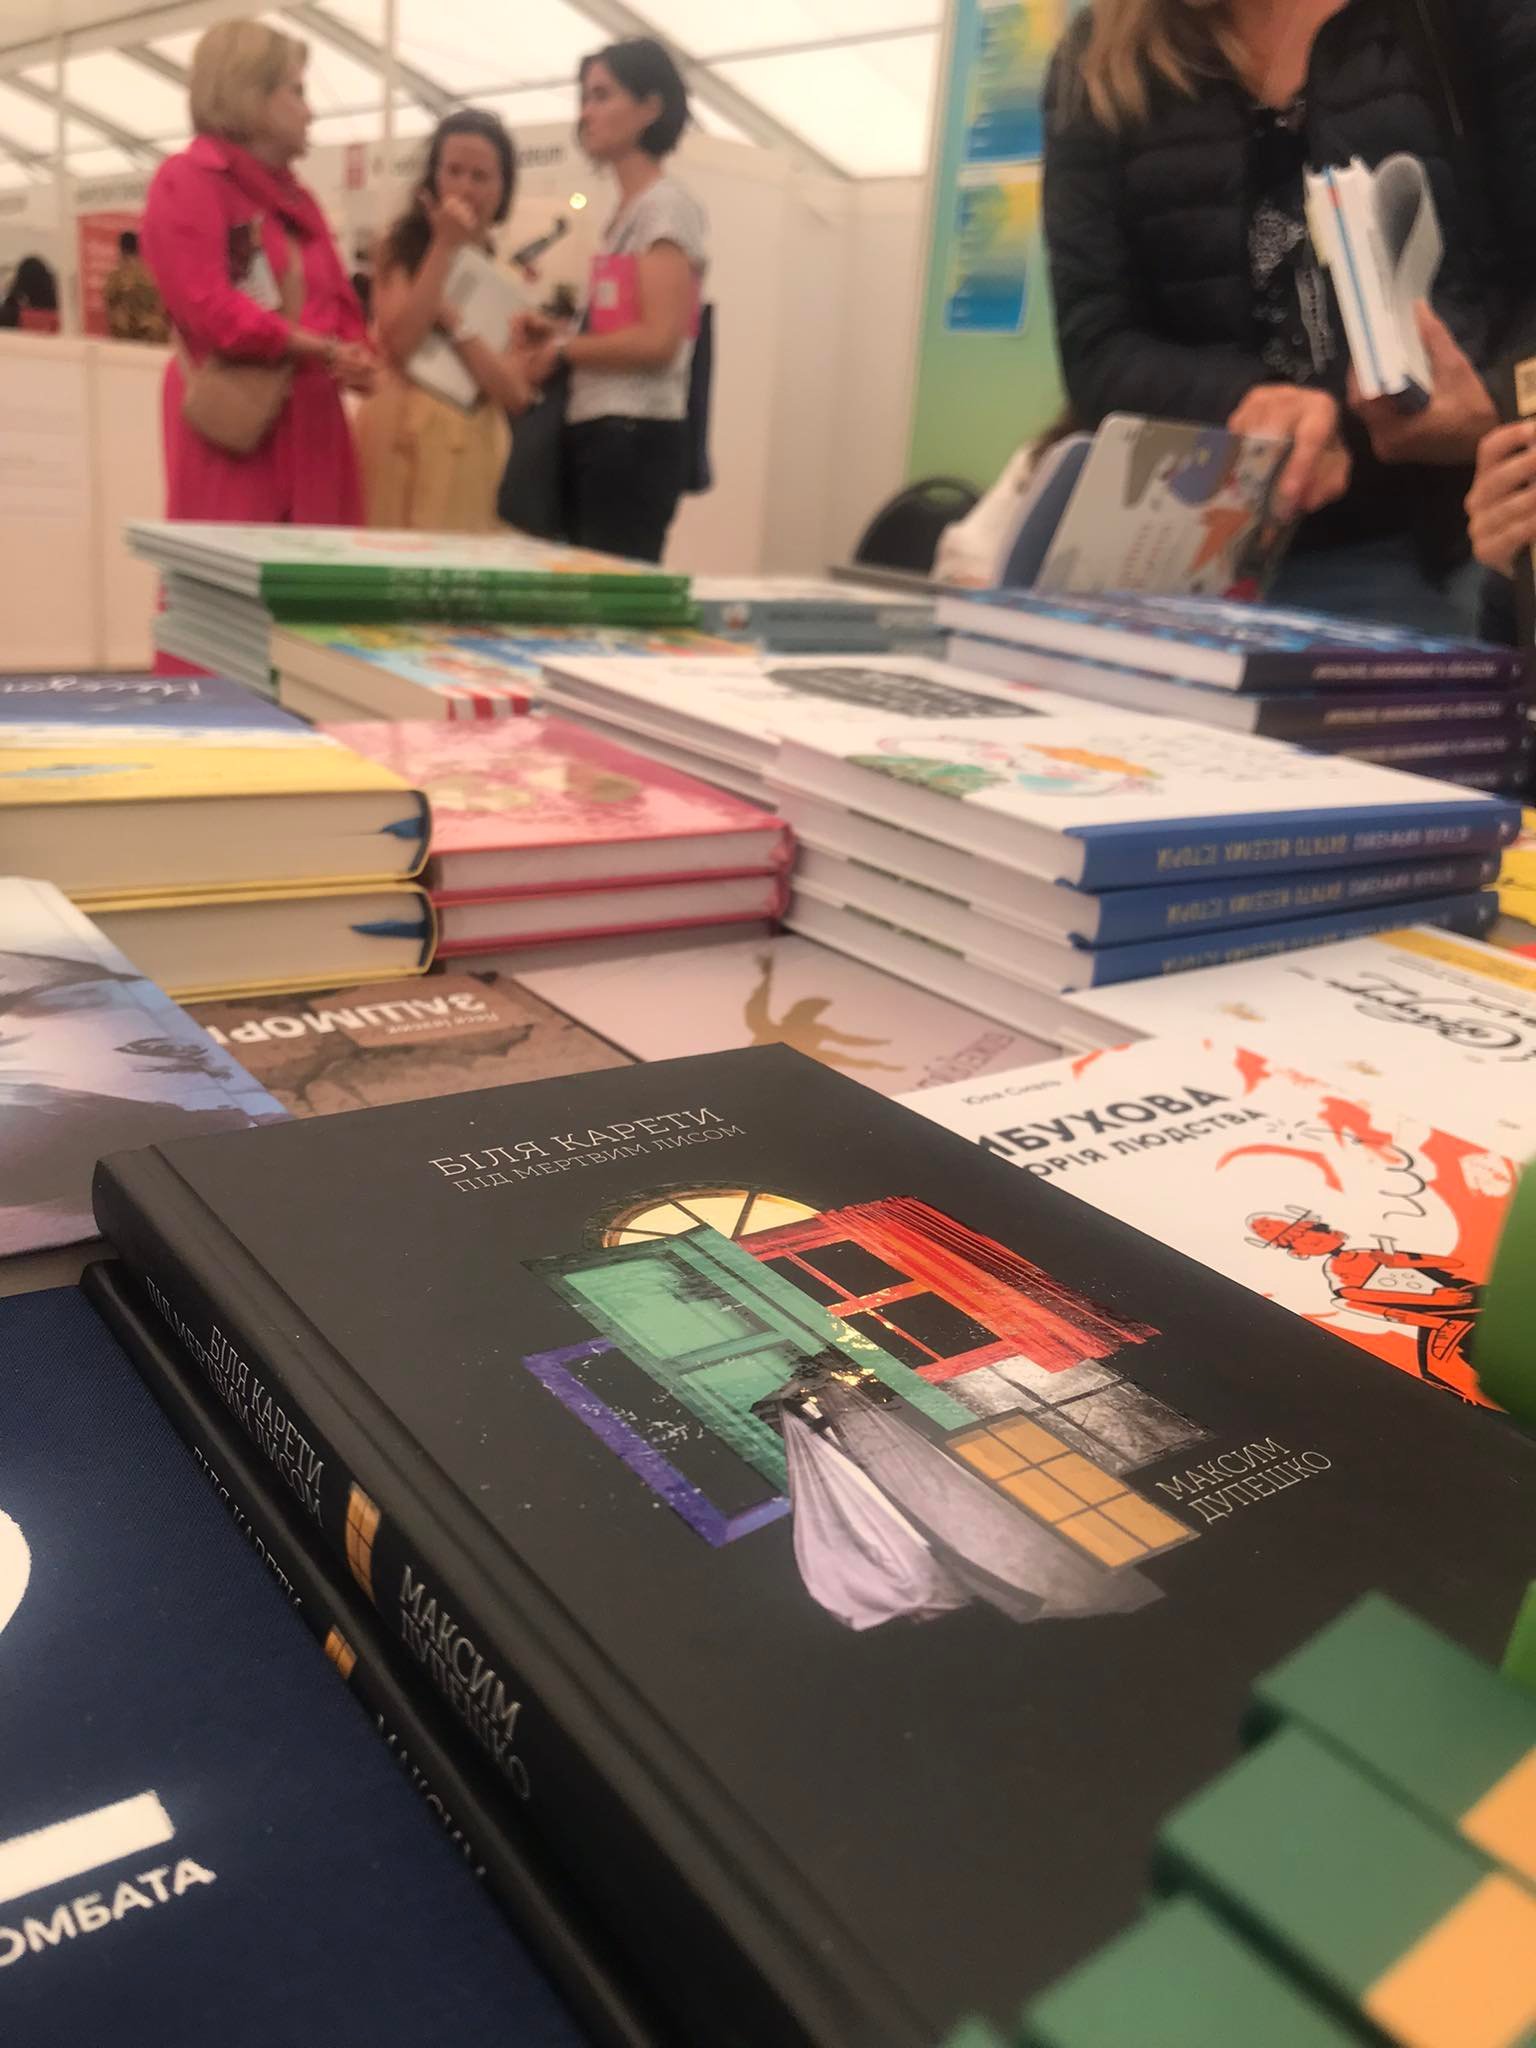 Єдині в наших спільних цінностях — чернівецьке видавництво взяло участь у книжковому фестивалі “Світ книги” в Чехії